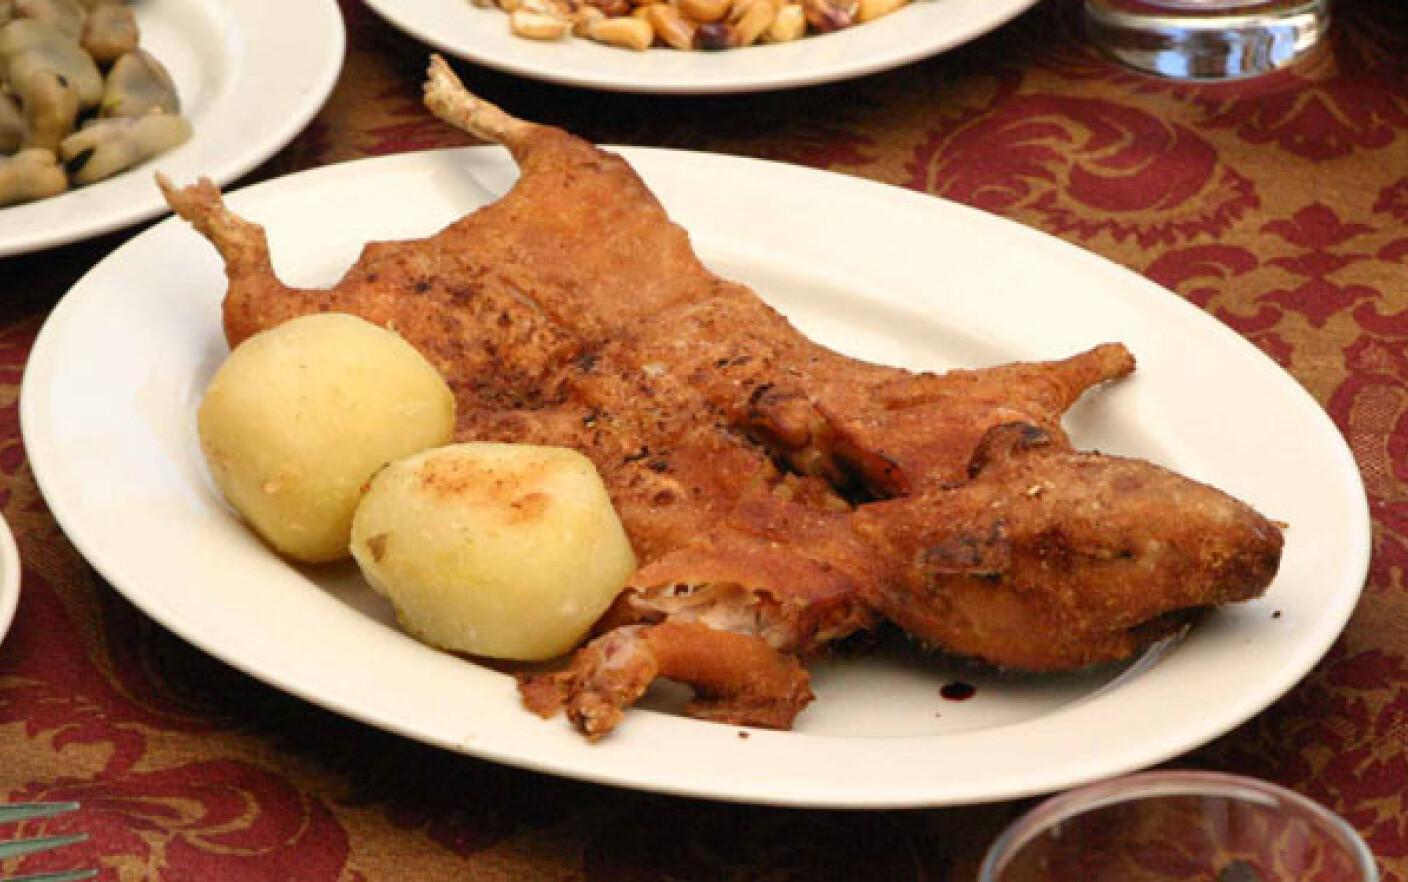 Mouthwash Compound Communism De sarbatori, in Peru se serveste friptura din carne de porcusor de Guineea  - Stirileprotv.ro